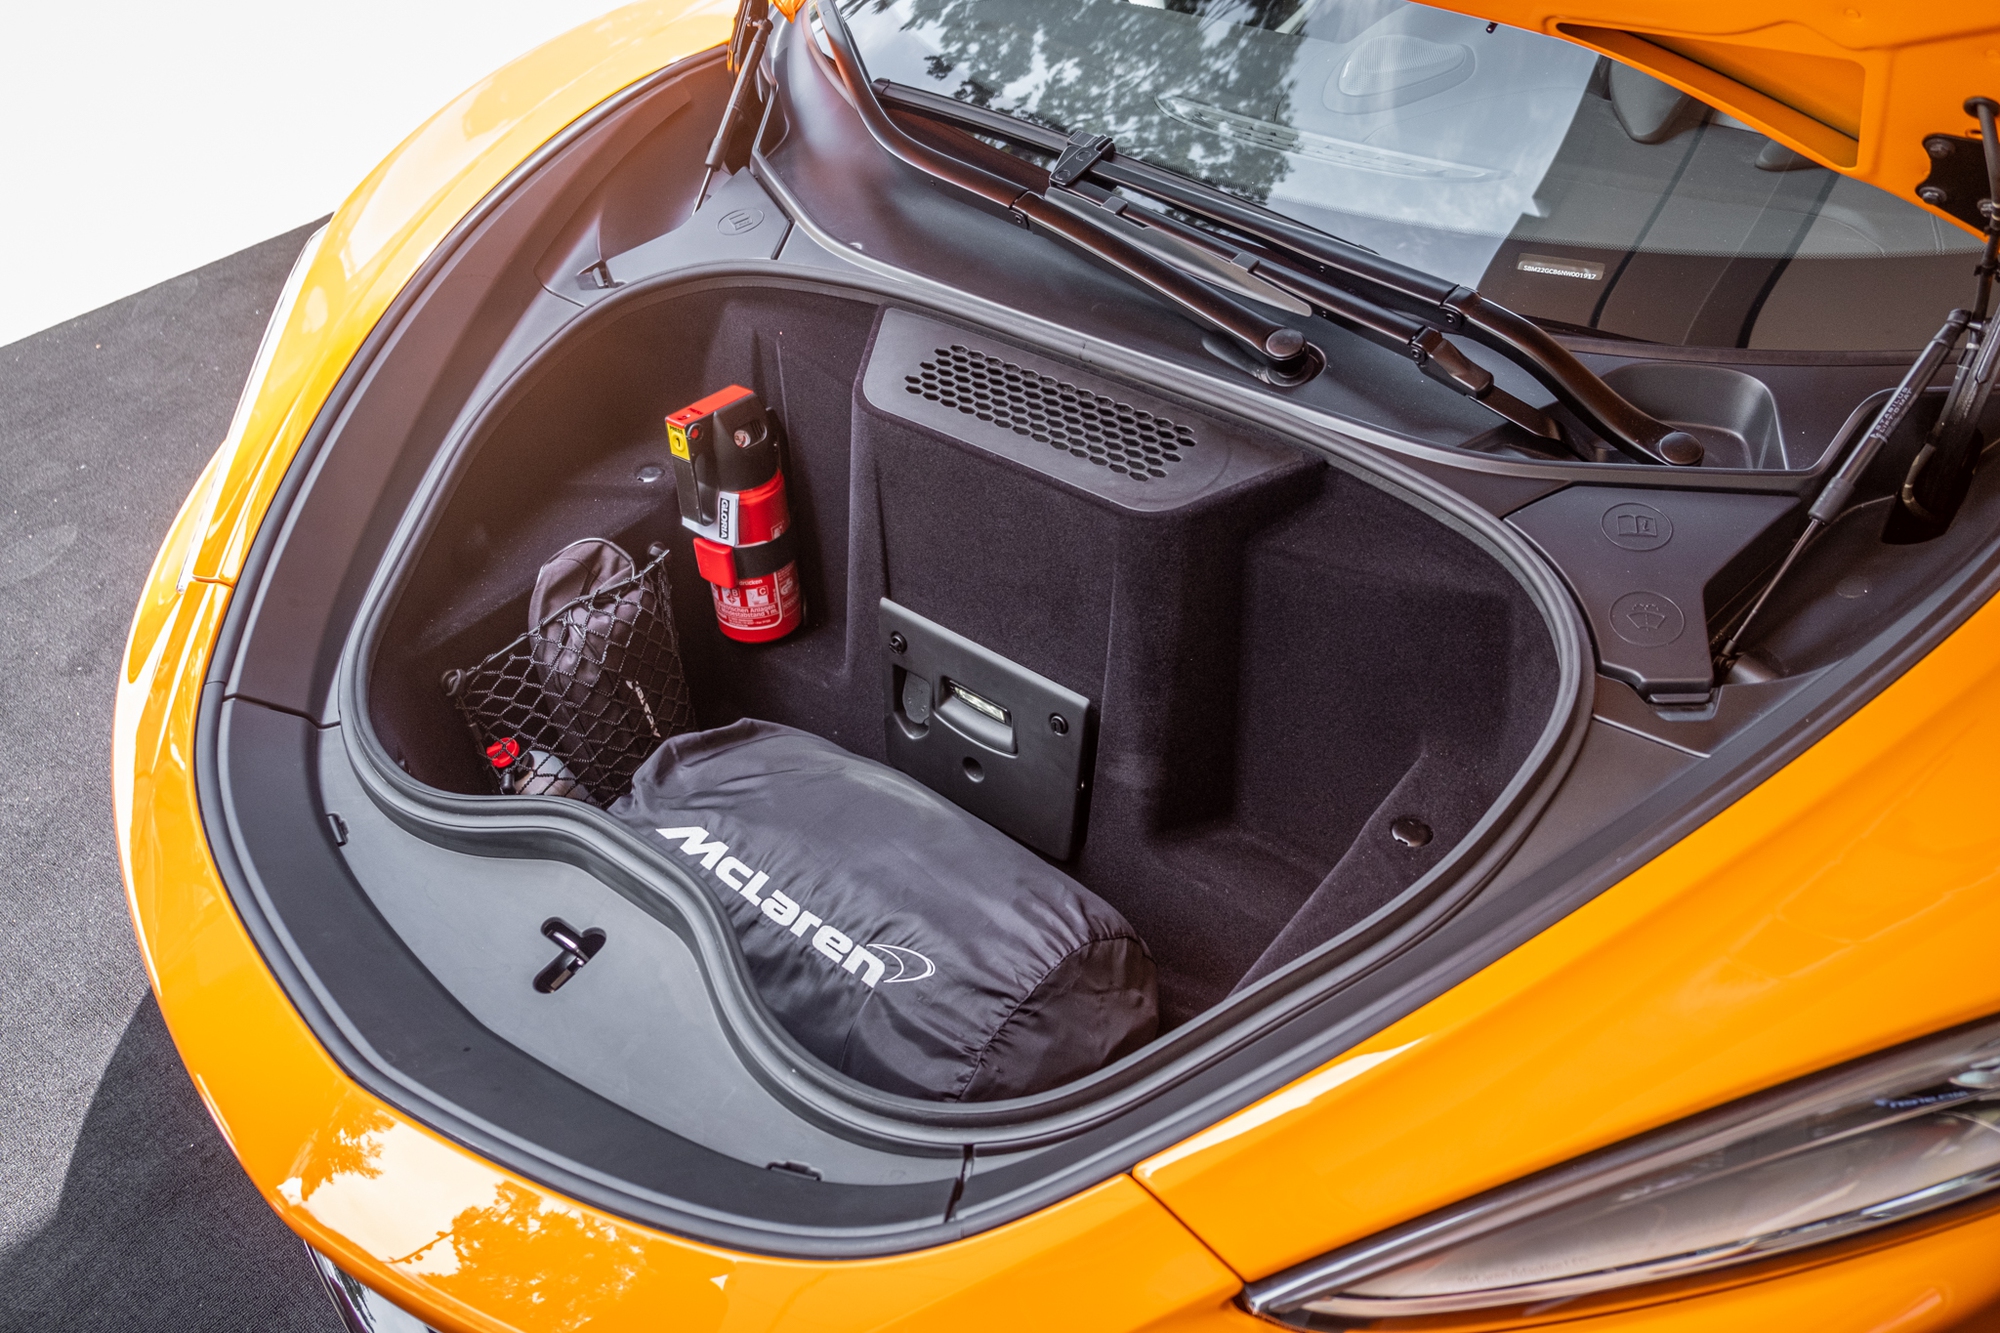 McLaren GT ra mắt Việt Nam: Giá 16 tỷ đồng, siêu xe để lái ra đường hàng ngày - Ảnh 7.